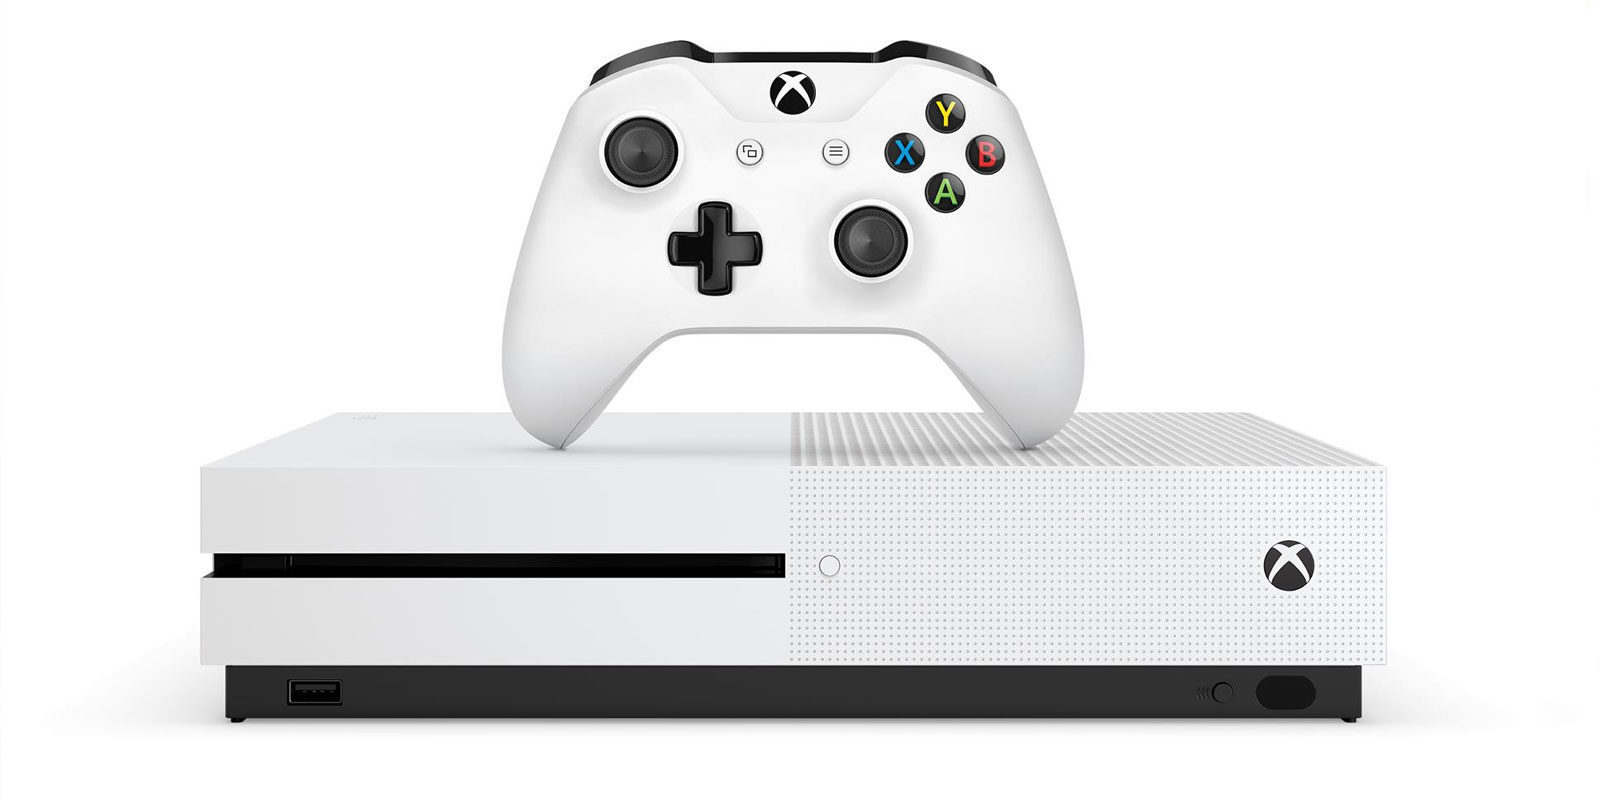 Xbox One Xbox One S: las diferencias modelos para decidir cuál comprar - Zonared